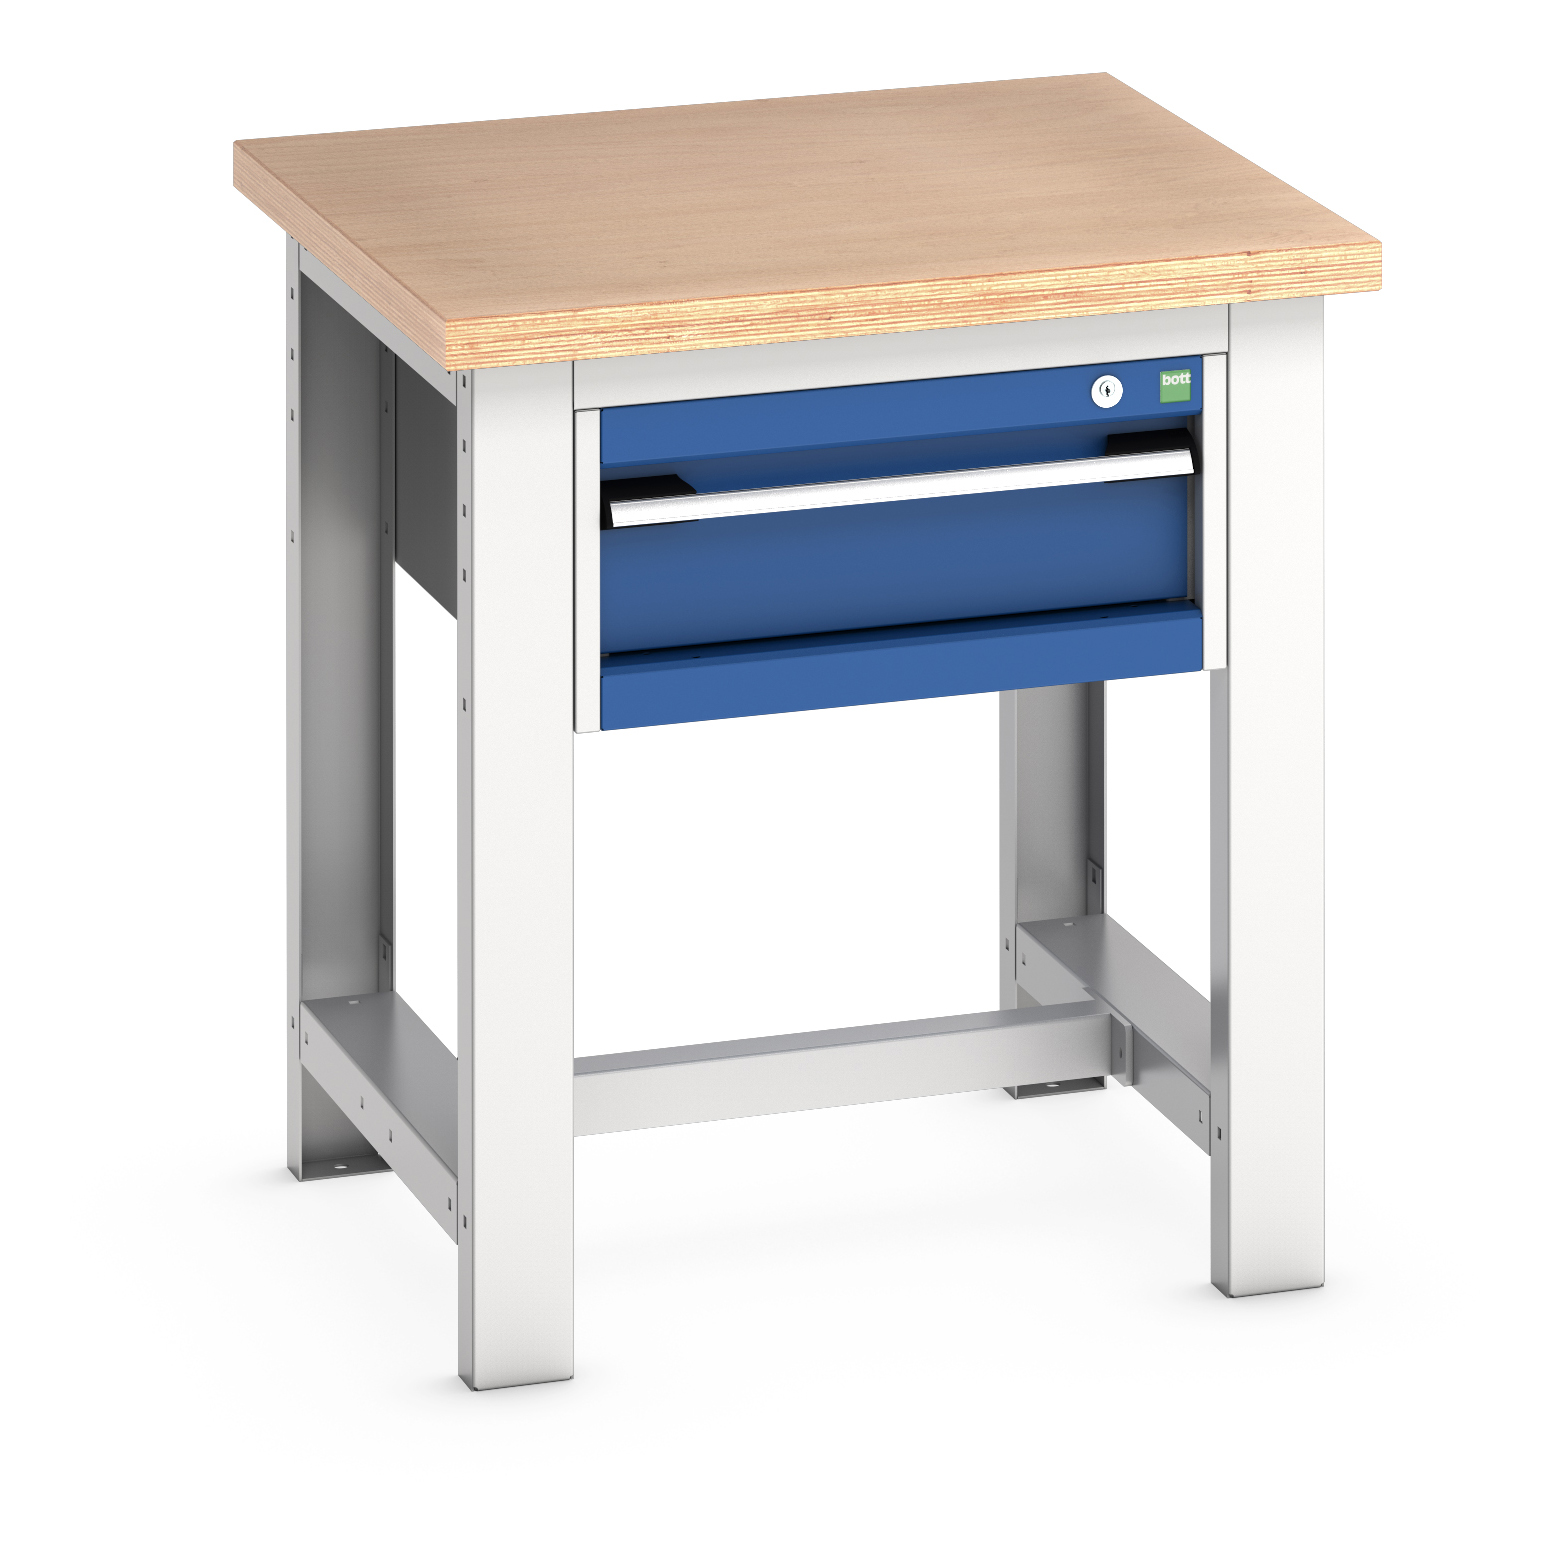 Bott Cubio Framework Workstand With 1 Drawer Cabinet - 41003521.11V